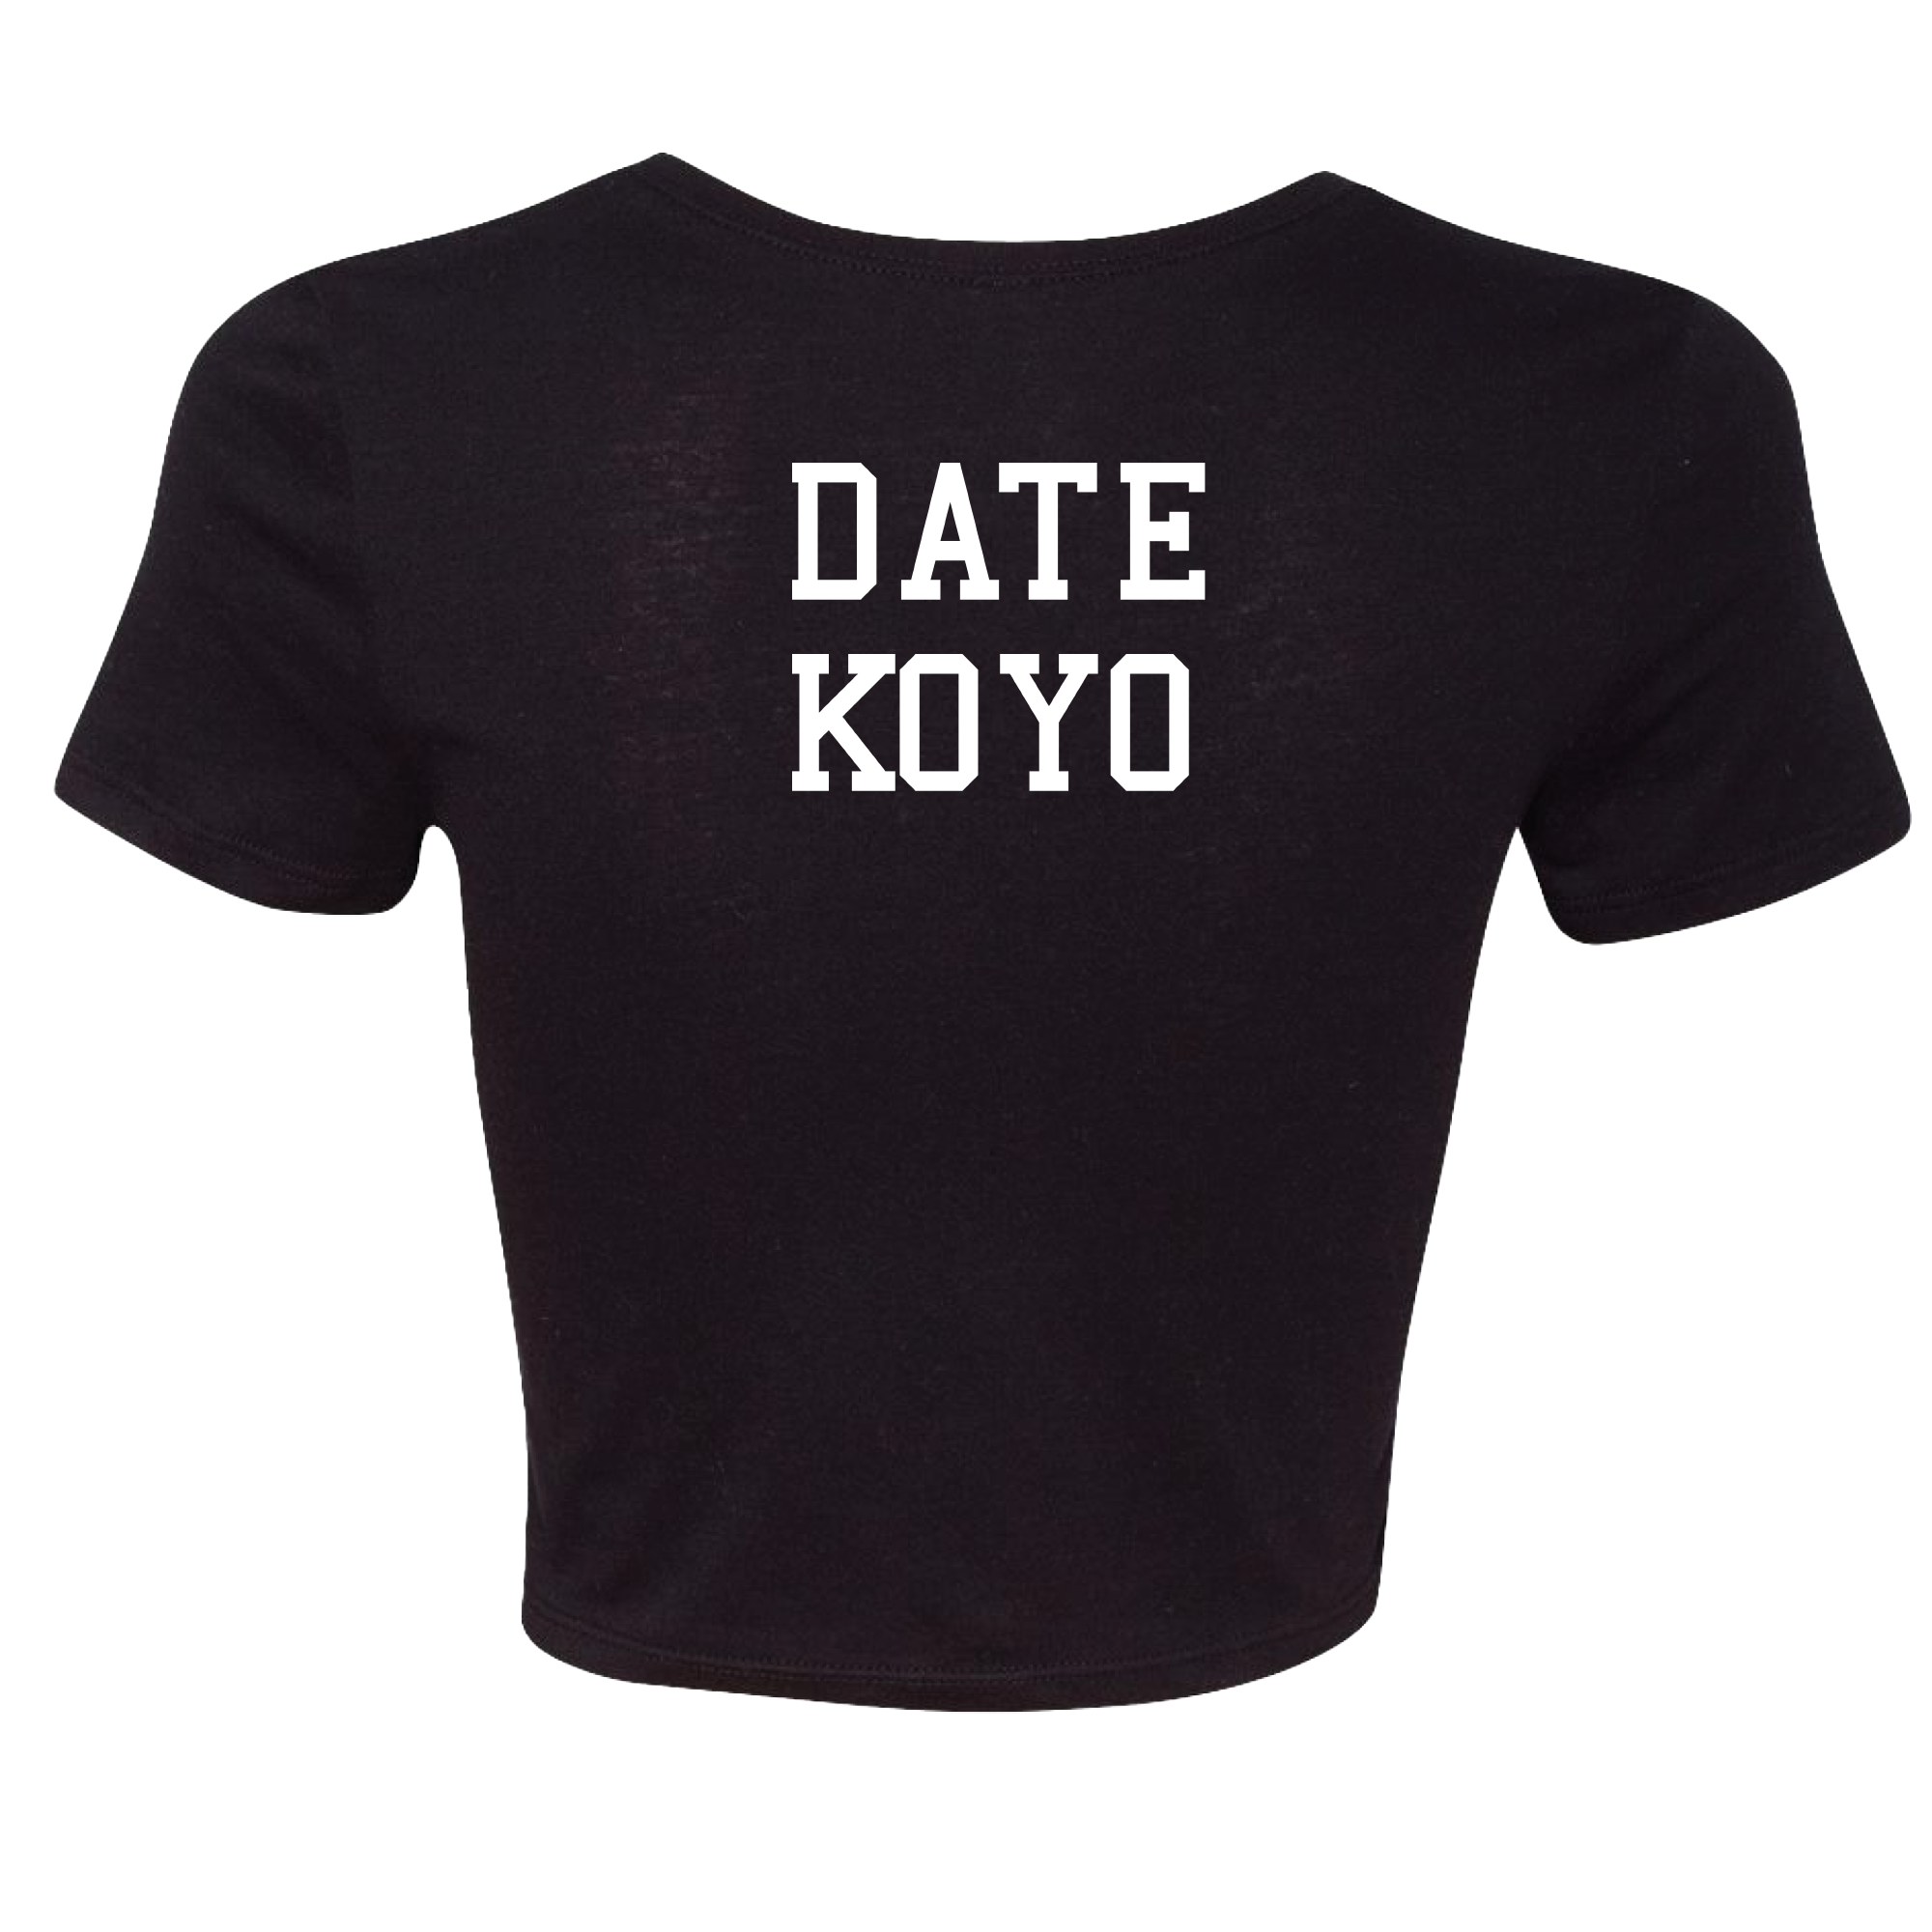 Koyo - Date Koyo Crop